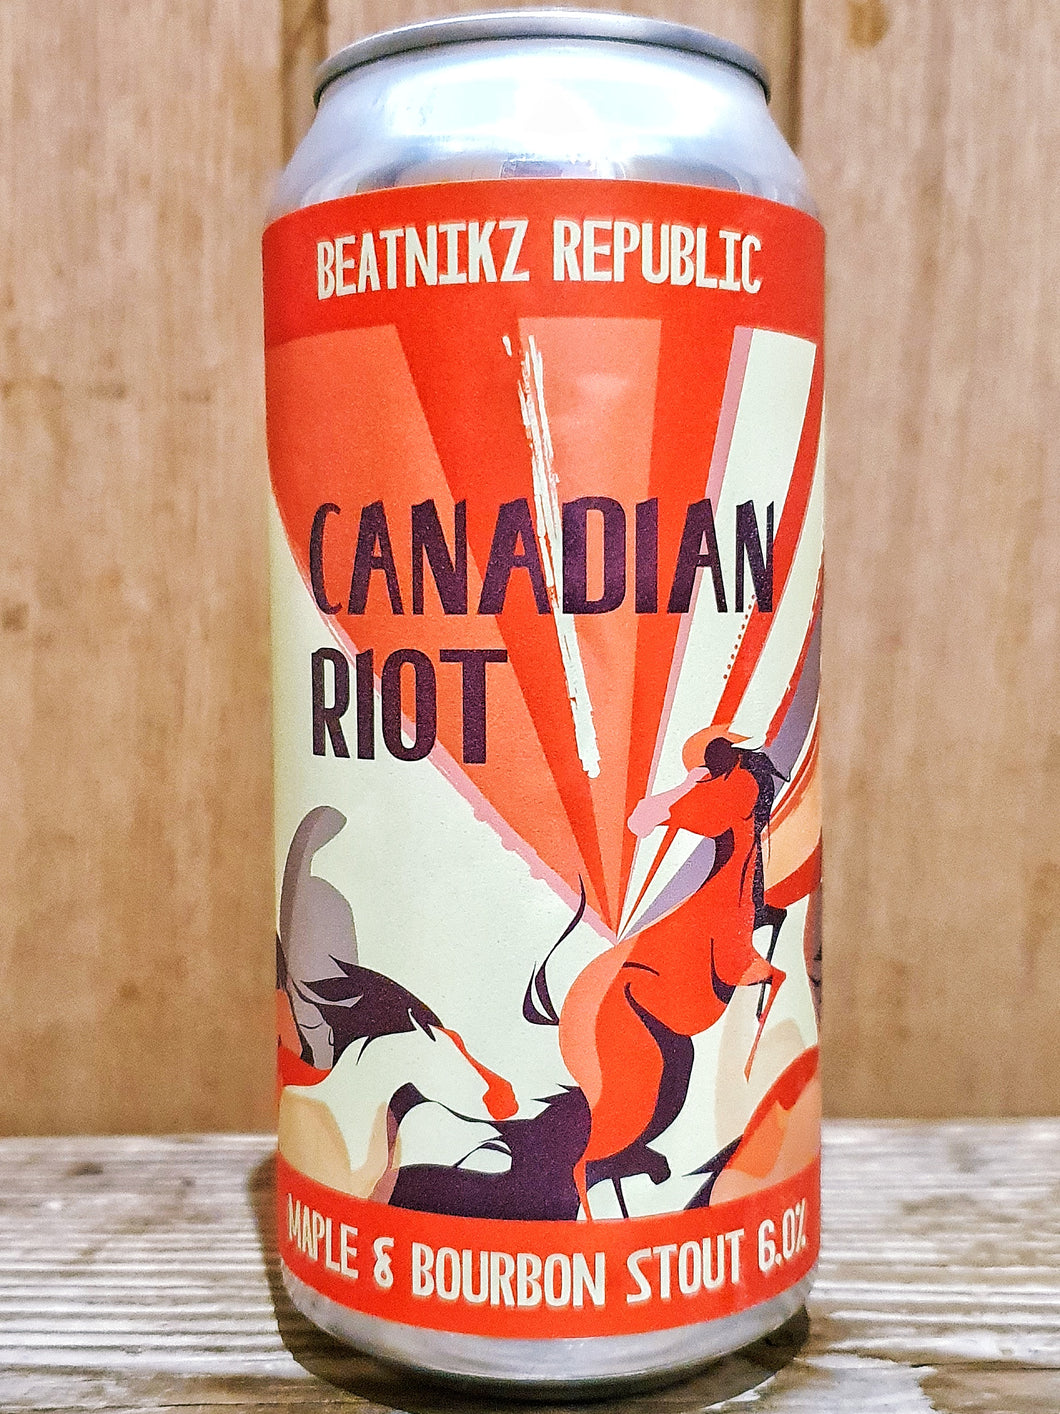 Beatnikz Republic - Canadian Riot